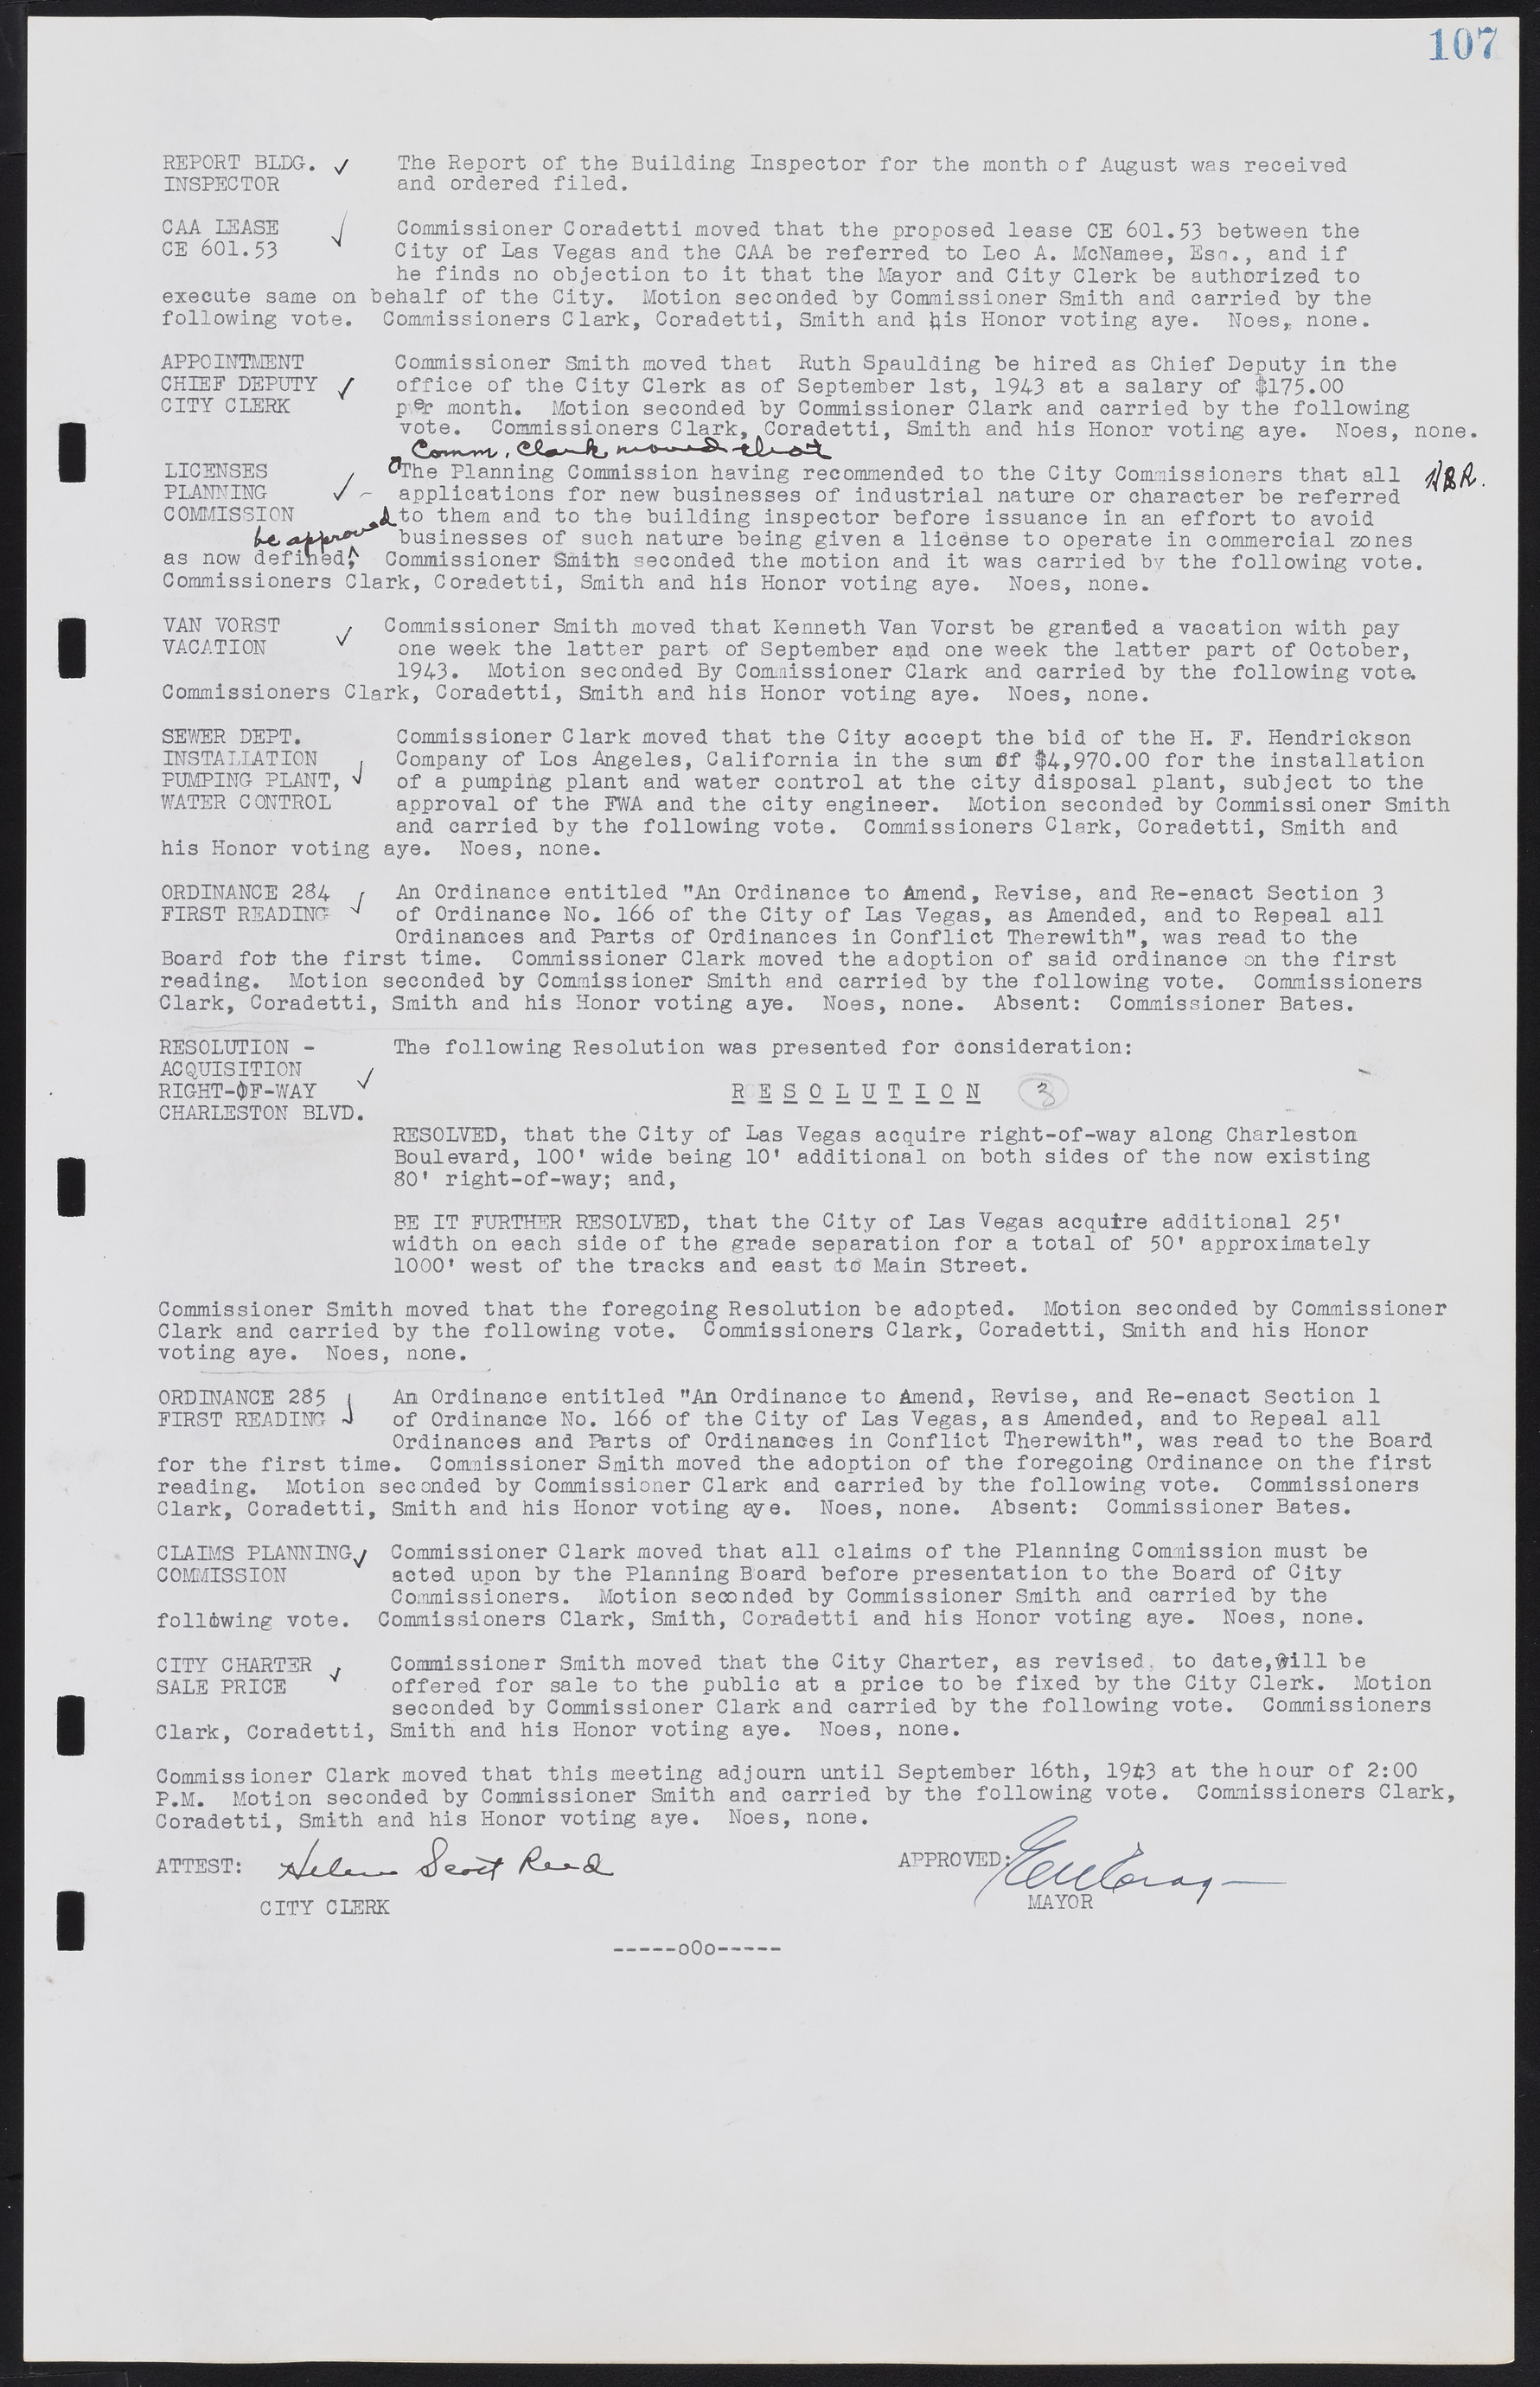 Las Vegas City Commission Minutes, August 11, 1942 to December 30, 1946, lvc000005-121